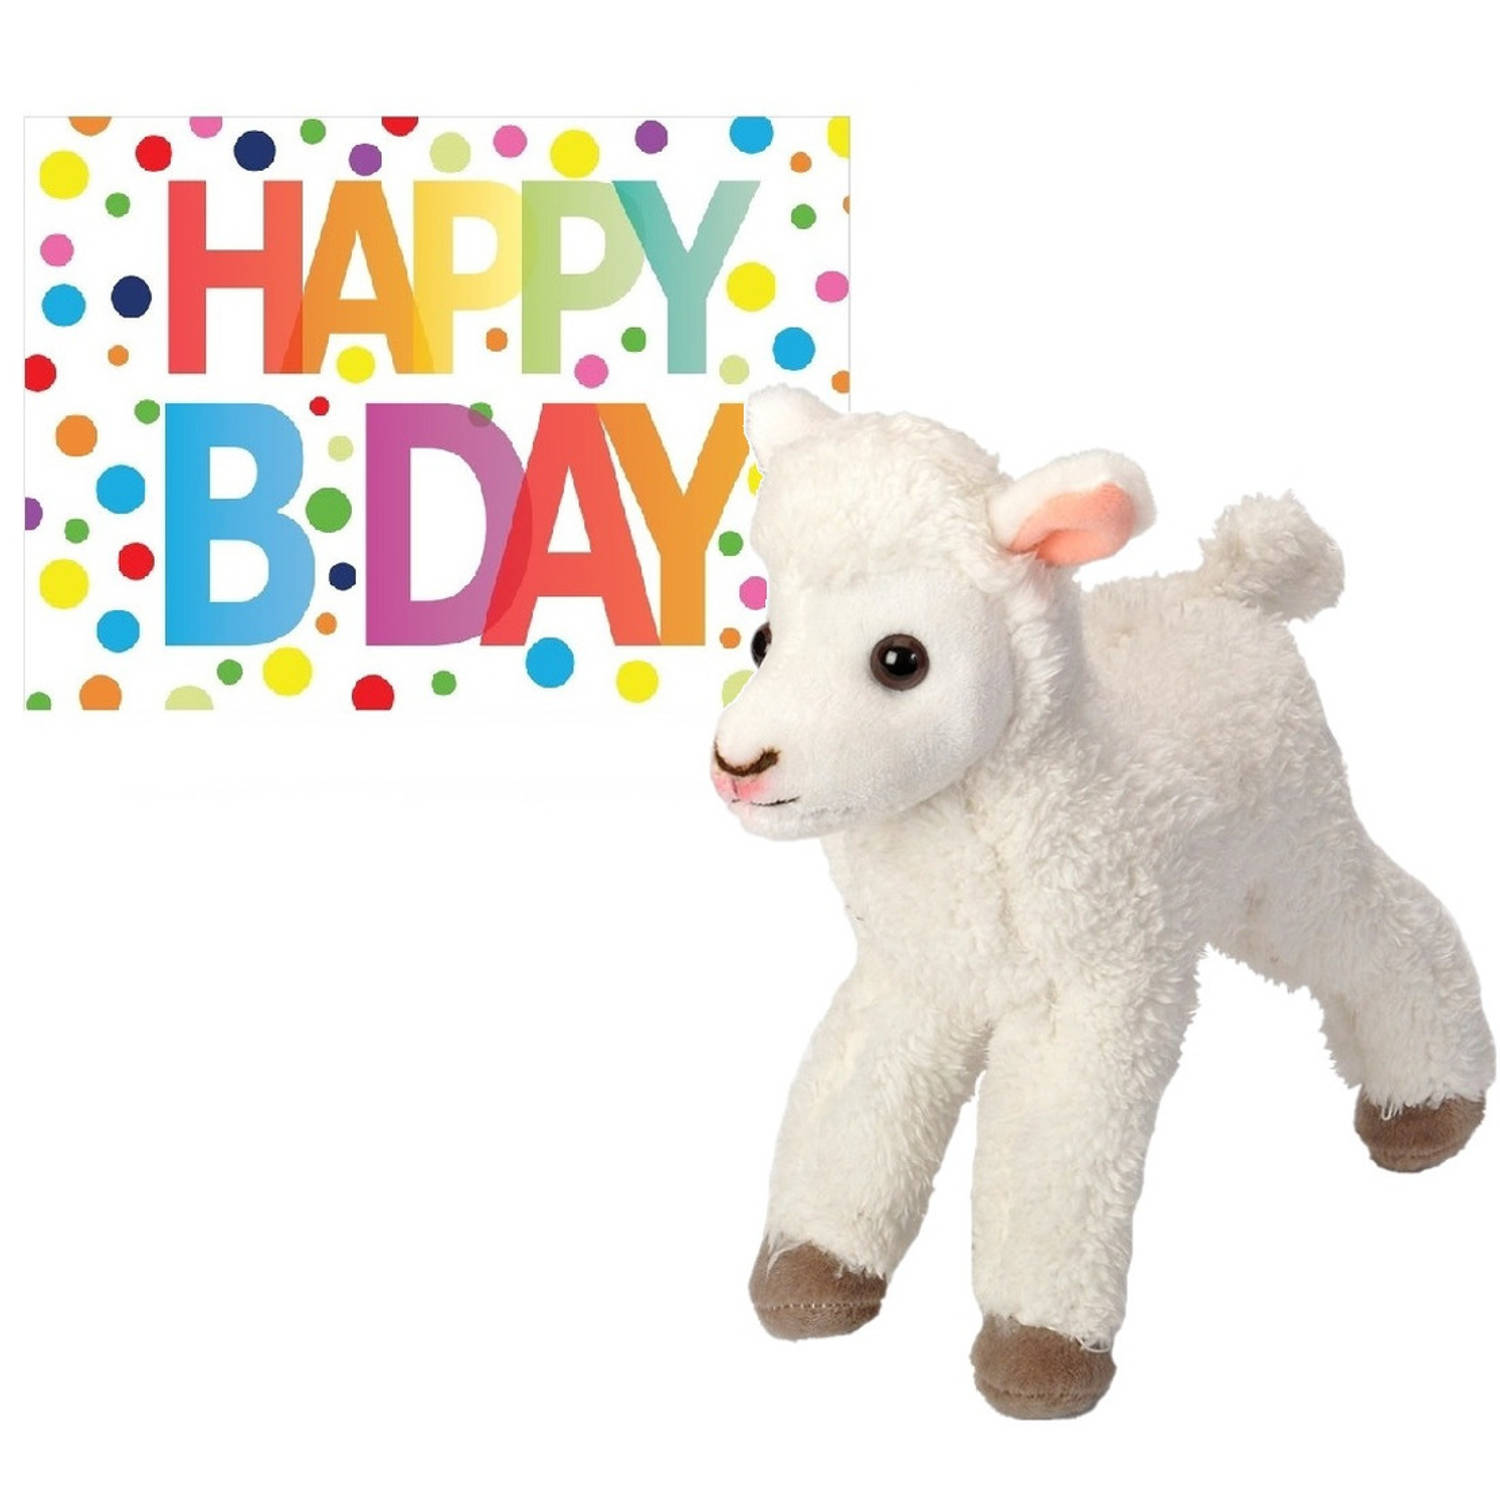 Pluche knuffel lammetje-schaap 20 cm met A5-size Happy Birthday wenskaart Knuffel boederijdieren